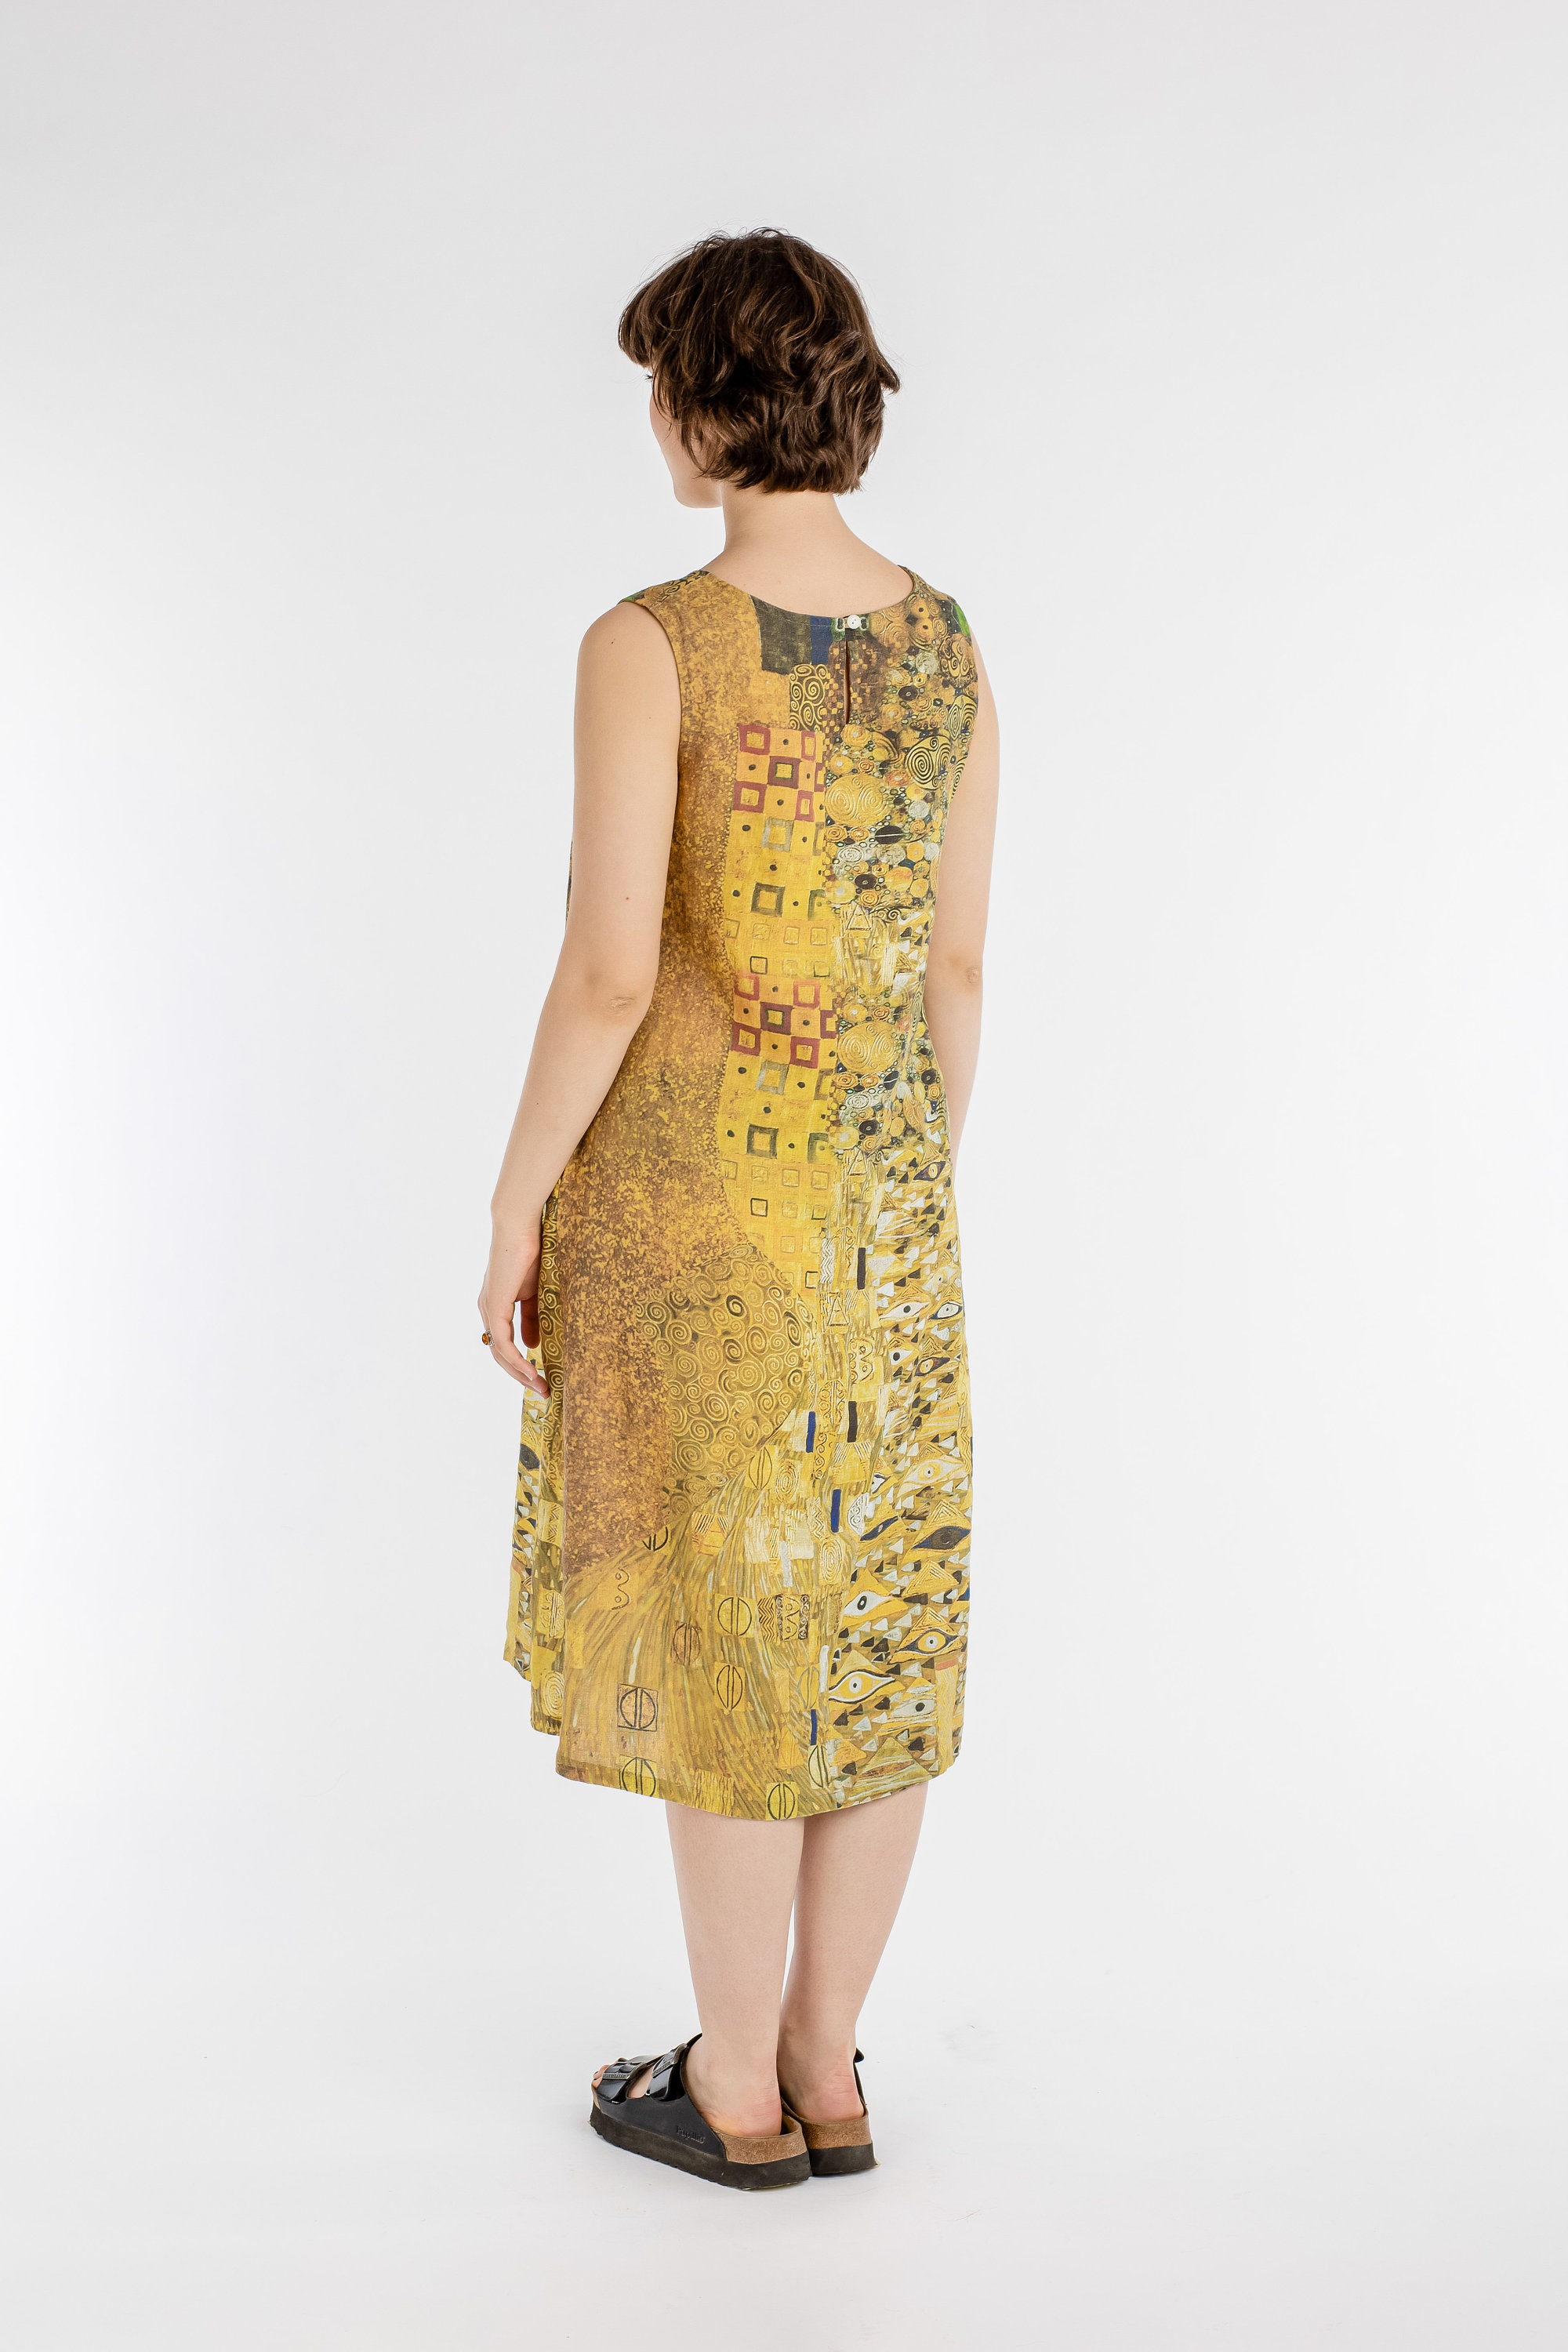 Gustav Klimt Mid Calf dress linen maxi dress wide linen dress 100% linen loose fit dress